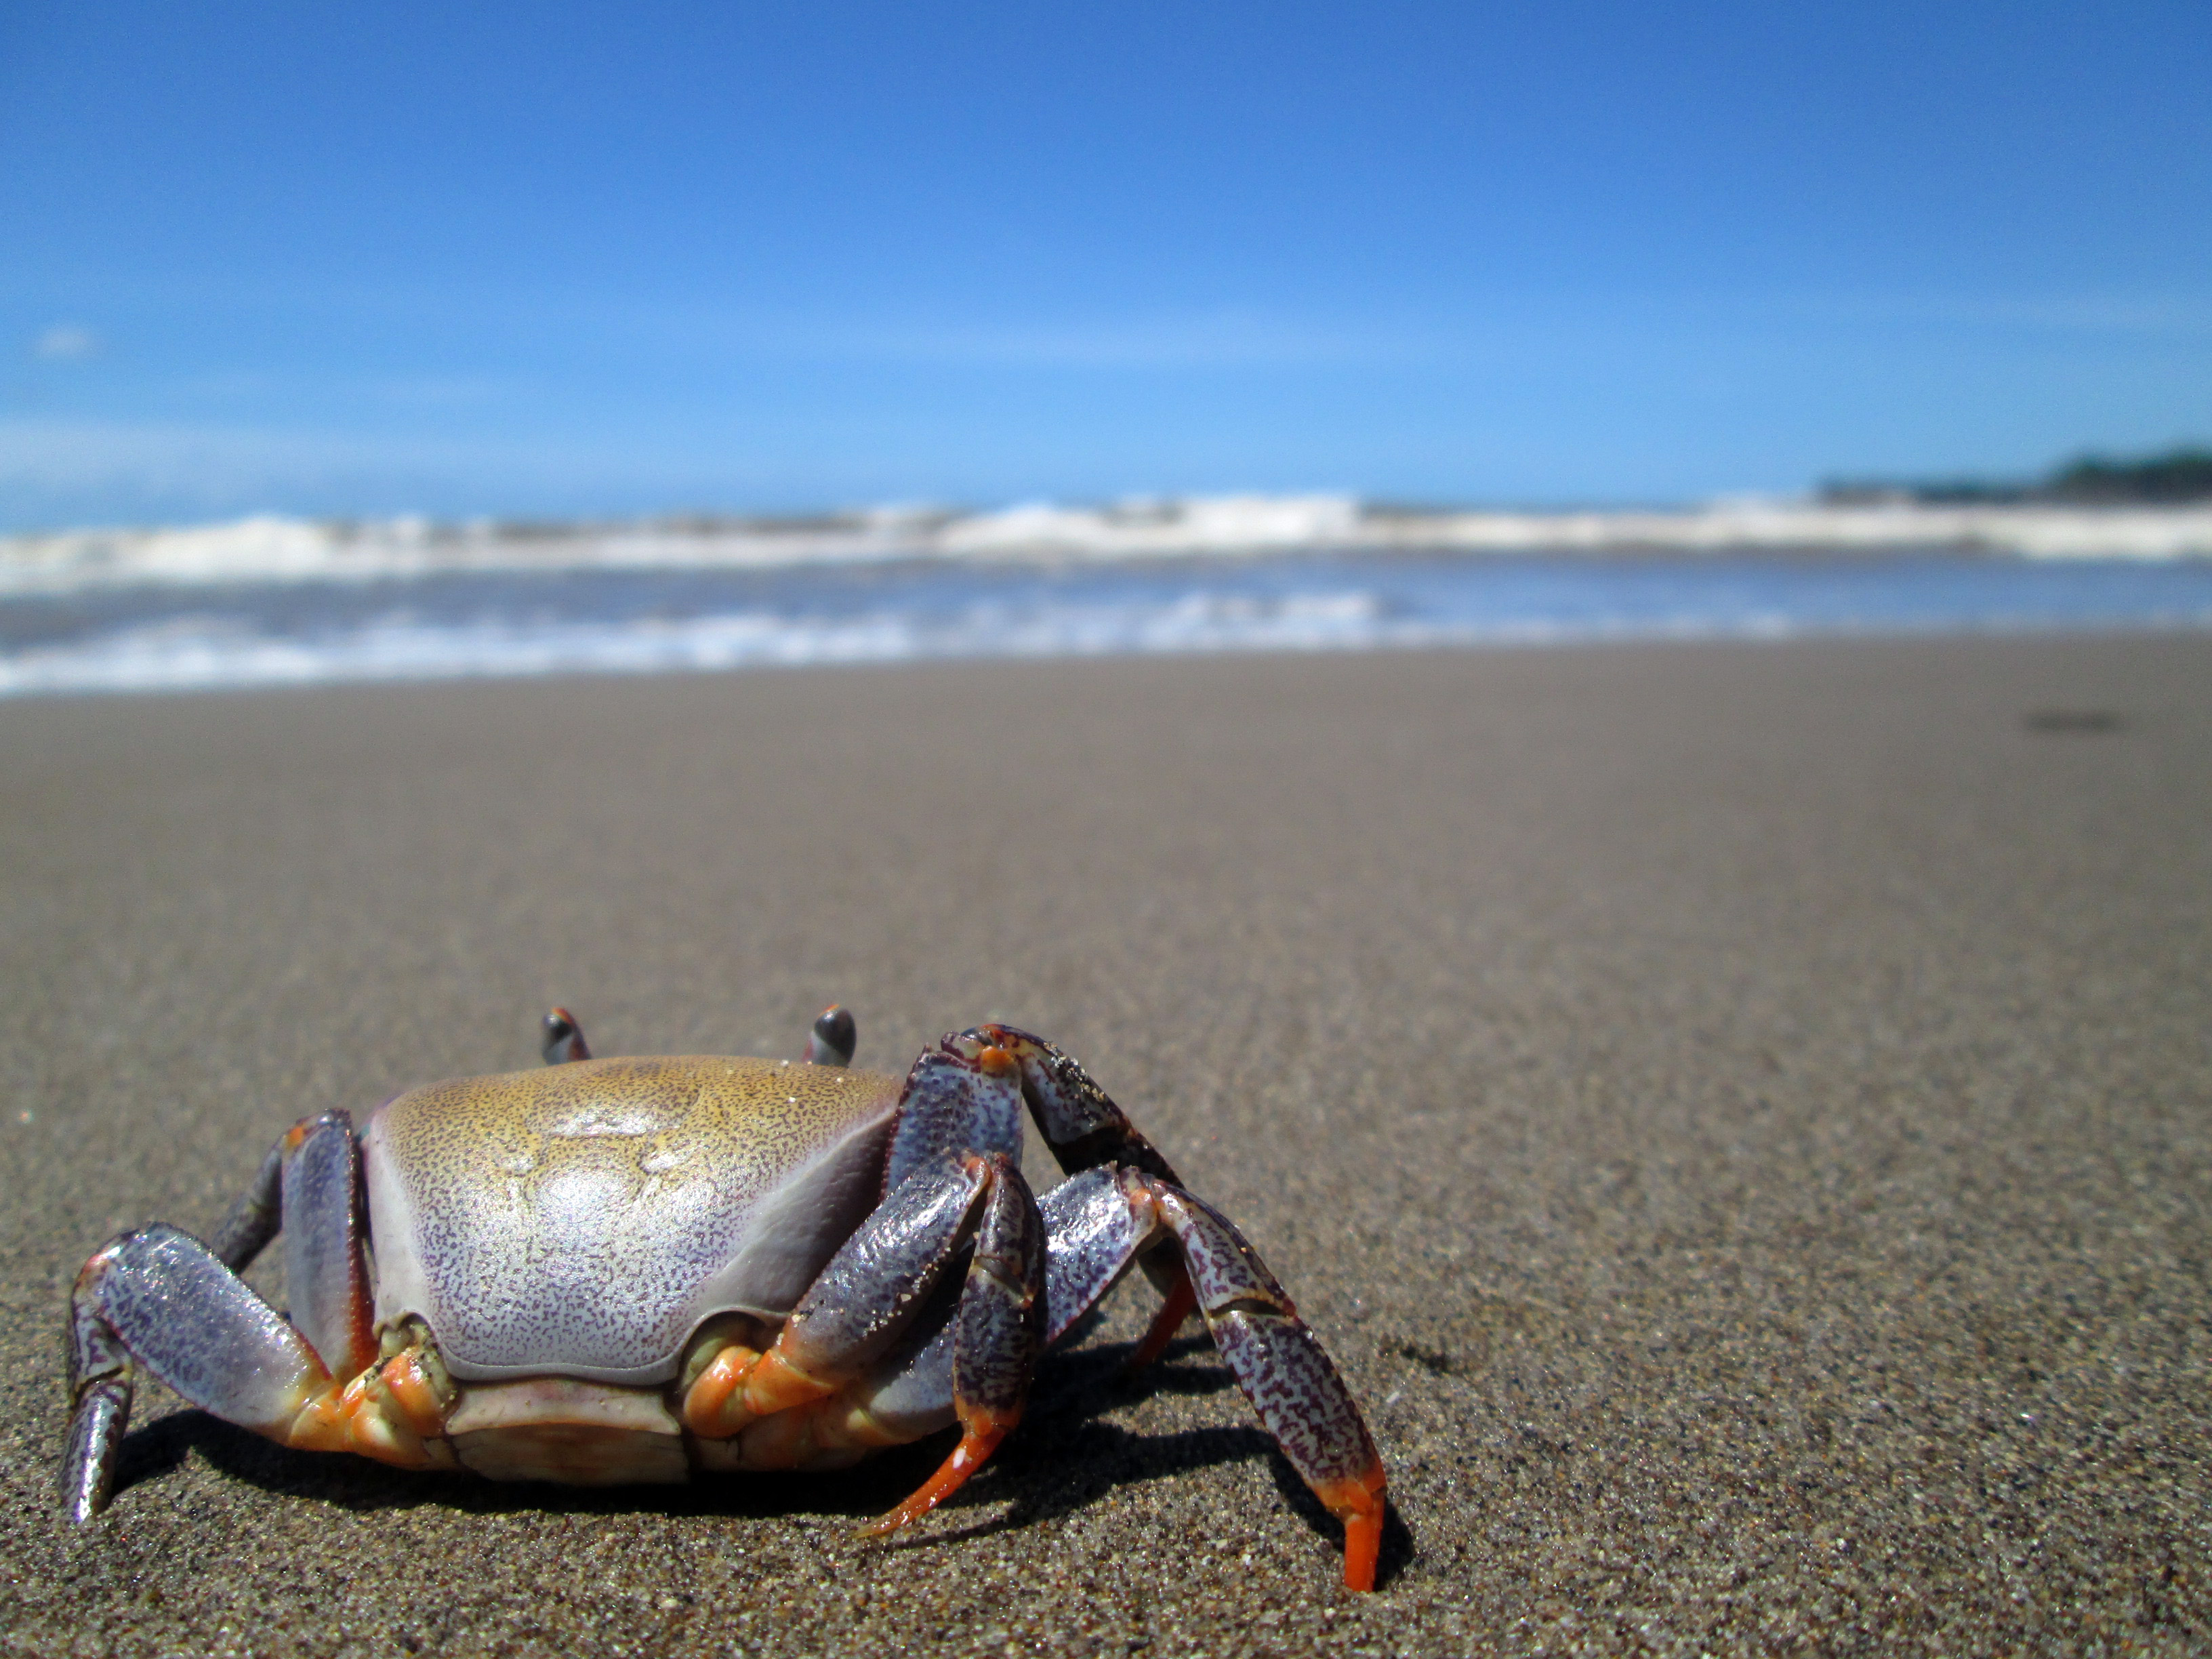 A crab at the beach staring at the sea photo